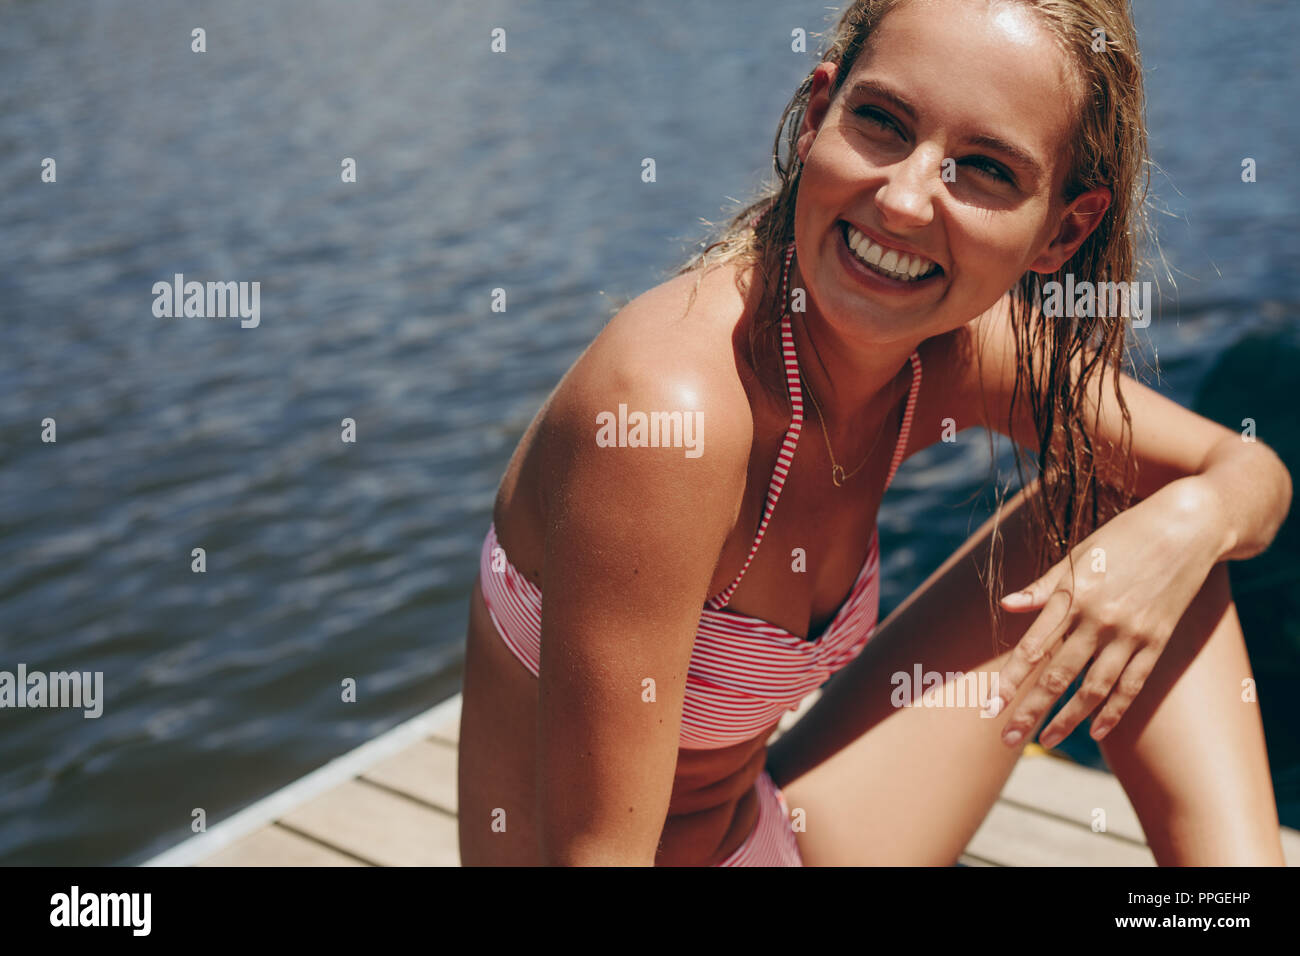 Frau im Bikini geniessen Sie Ihre Ferien an einem See. Frau im Badeanzug auf einem schwimmdock an einem See. Stockfoto